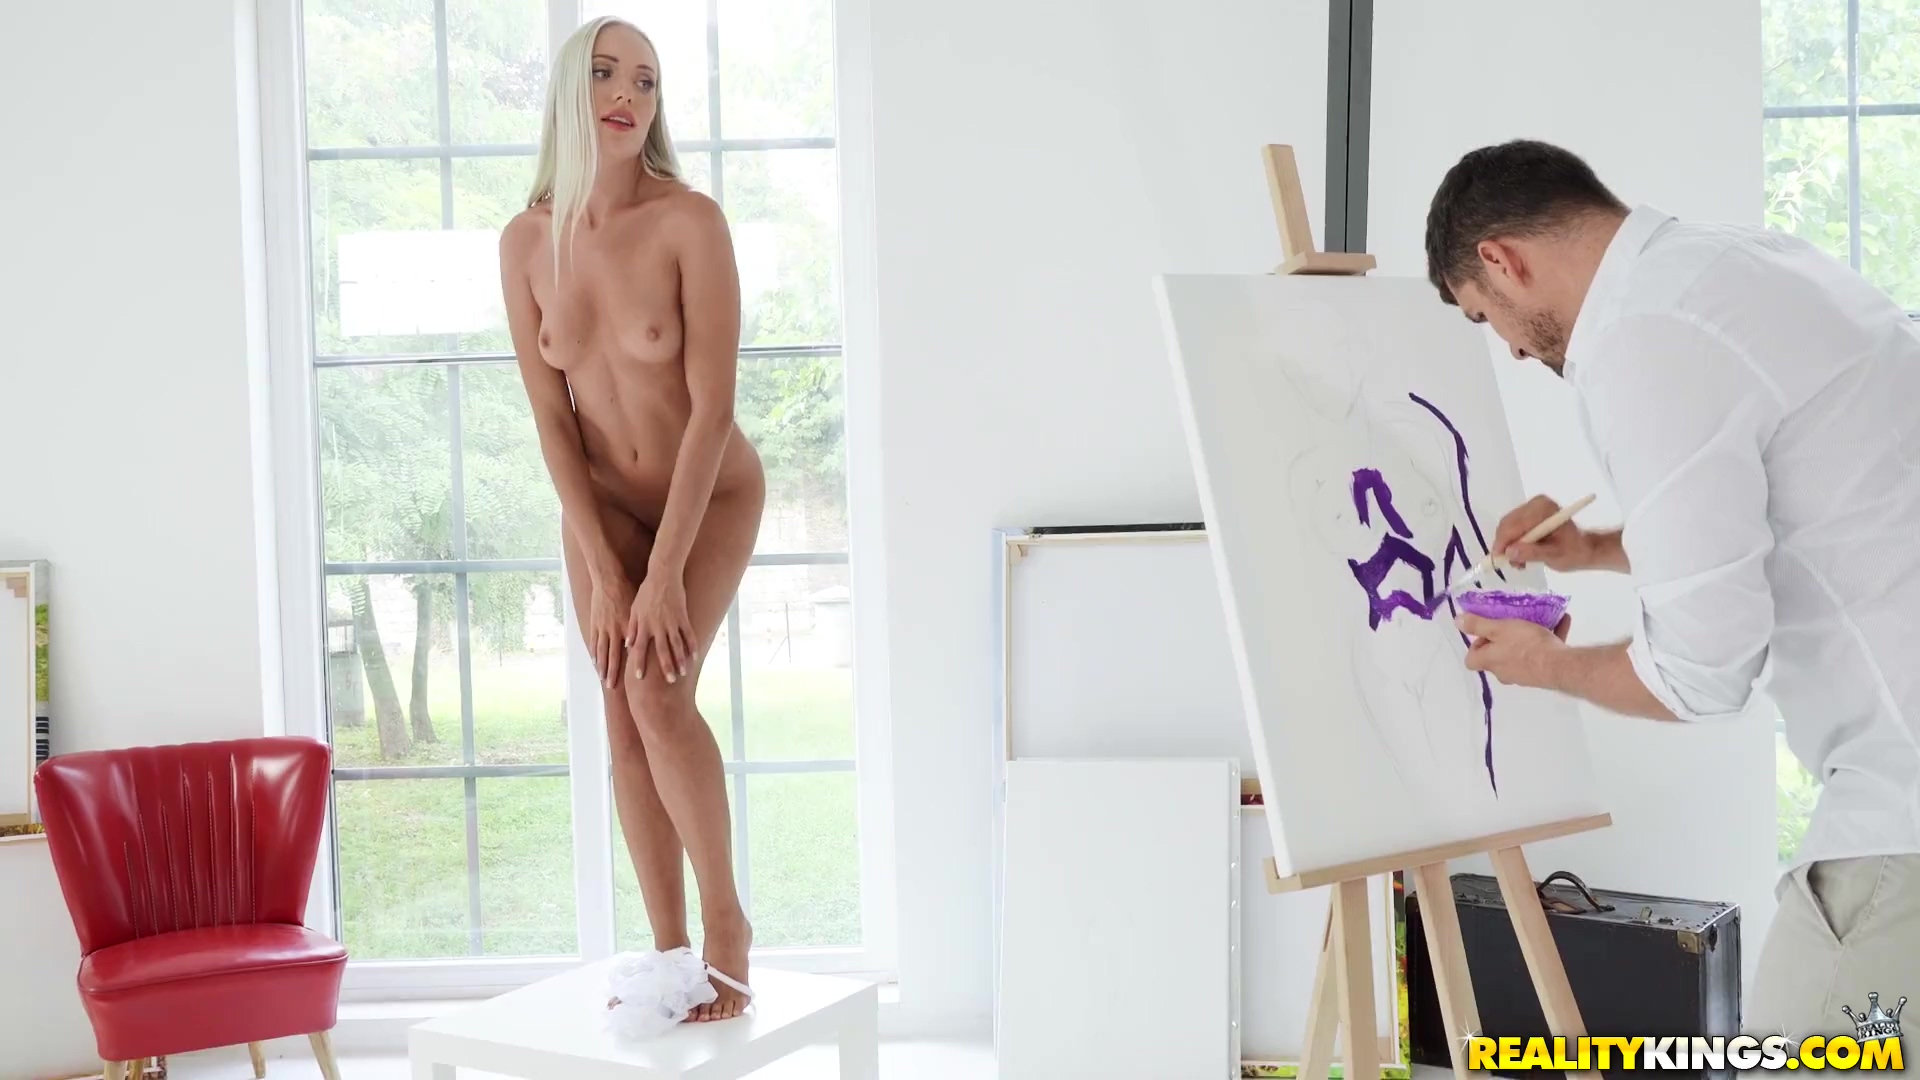 La modelo desnuda angelika greys seduce al artista para divertirse con ella  en lugar de pintar